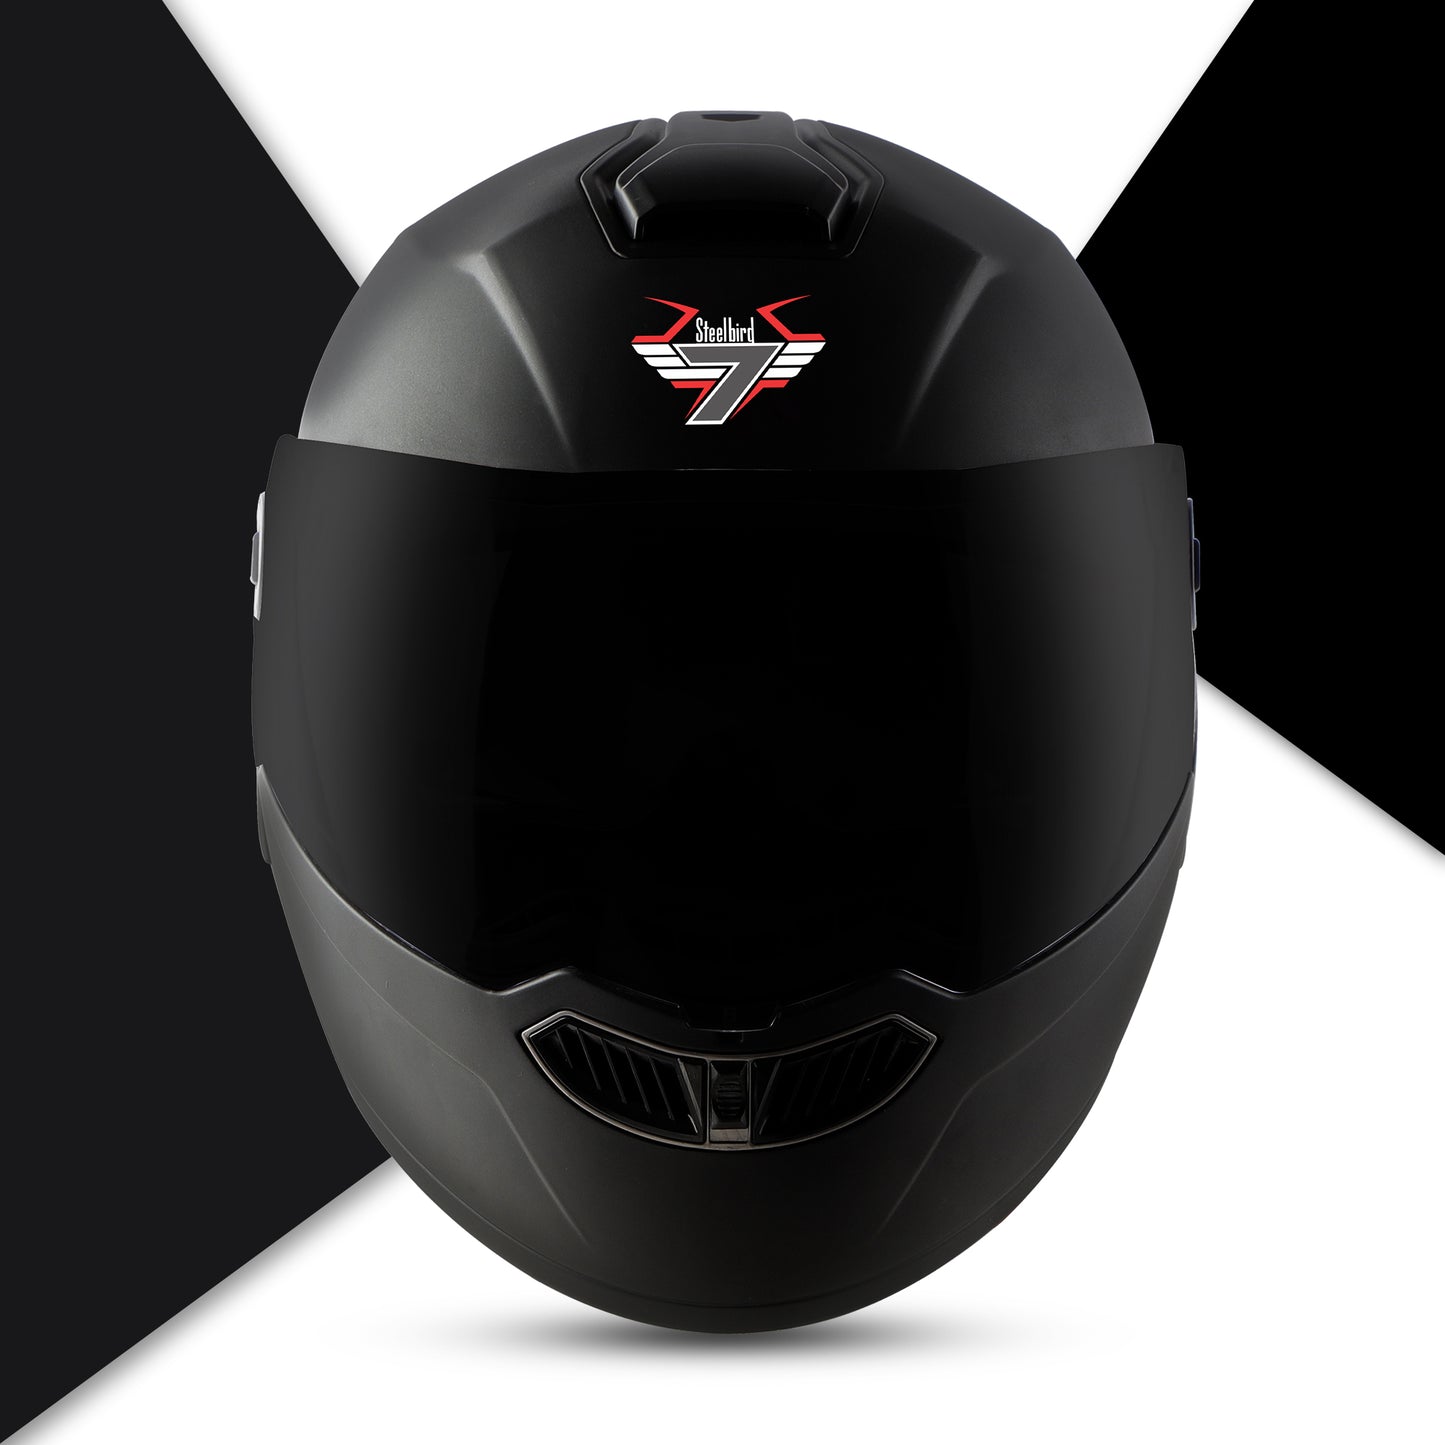 Steelbird SBA-8 7Wings ISI Certified Flip-Up Helmet for Men and Women (Matt Black with Smoke Visor)